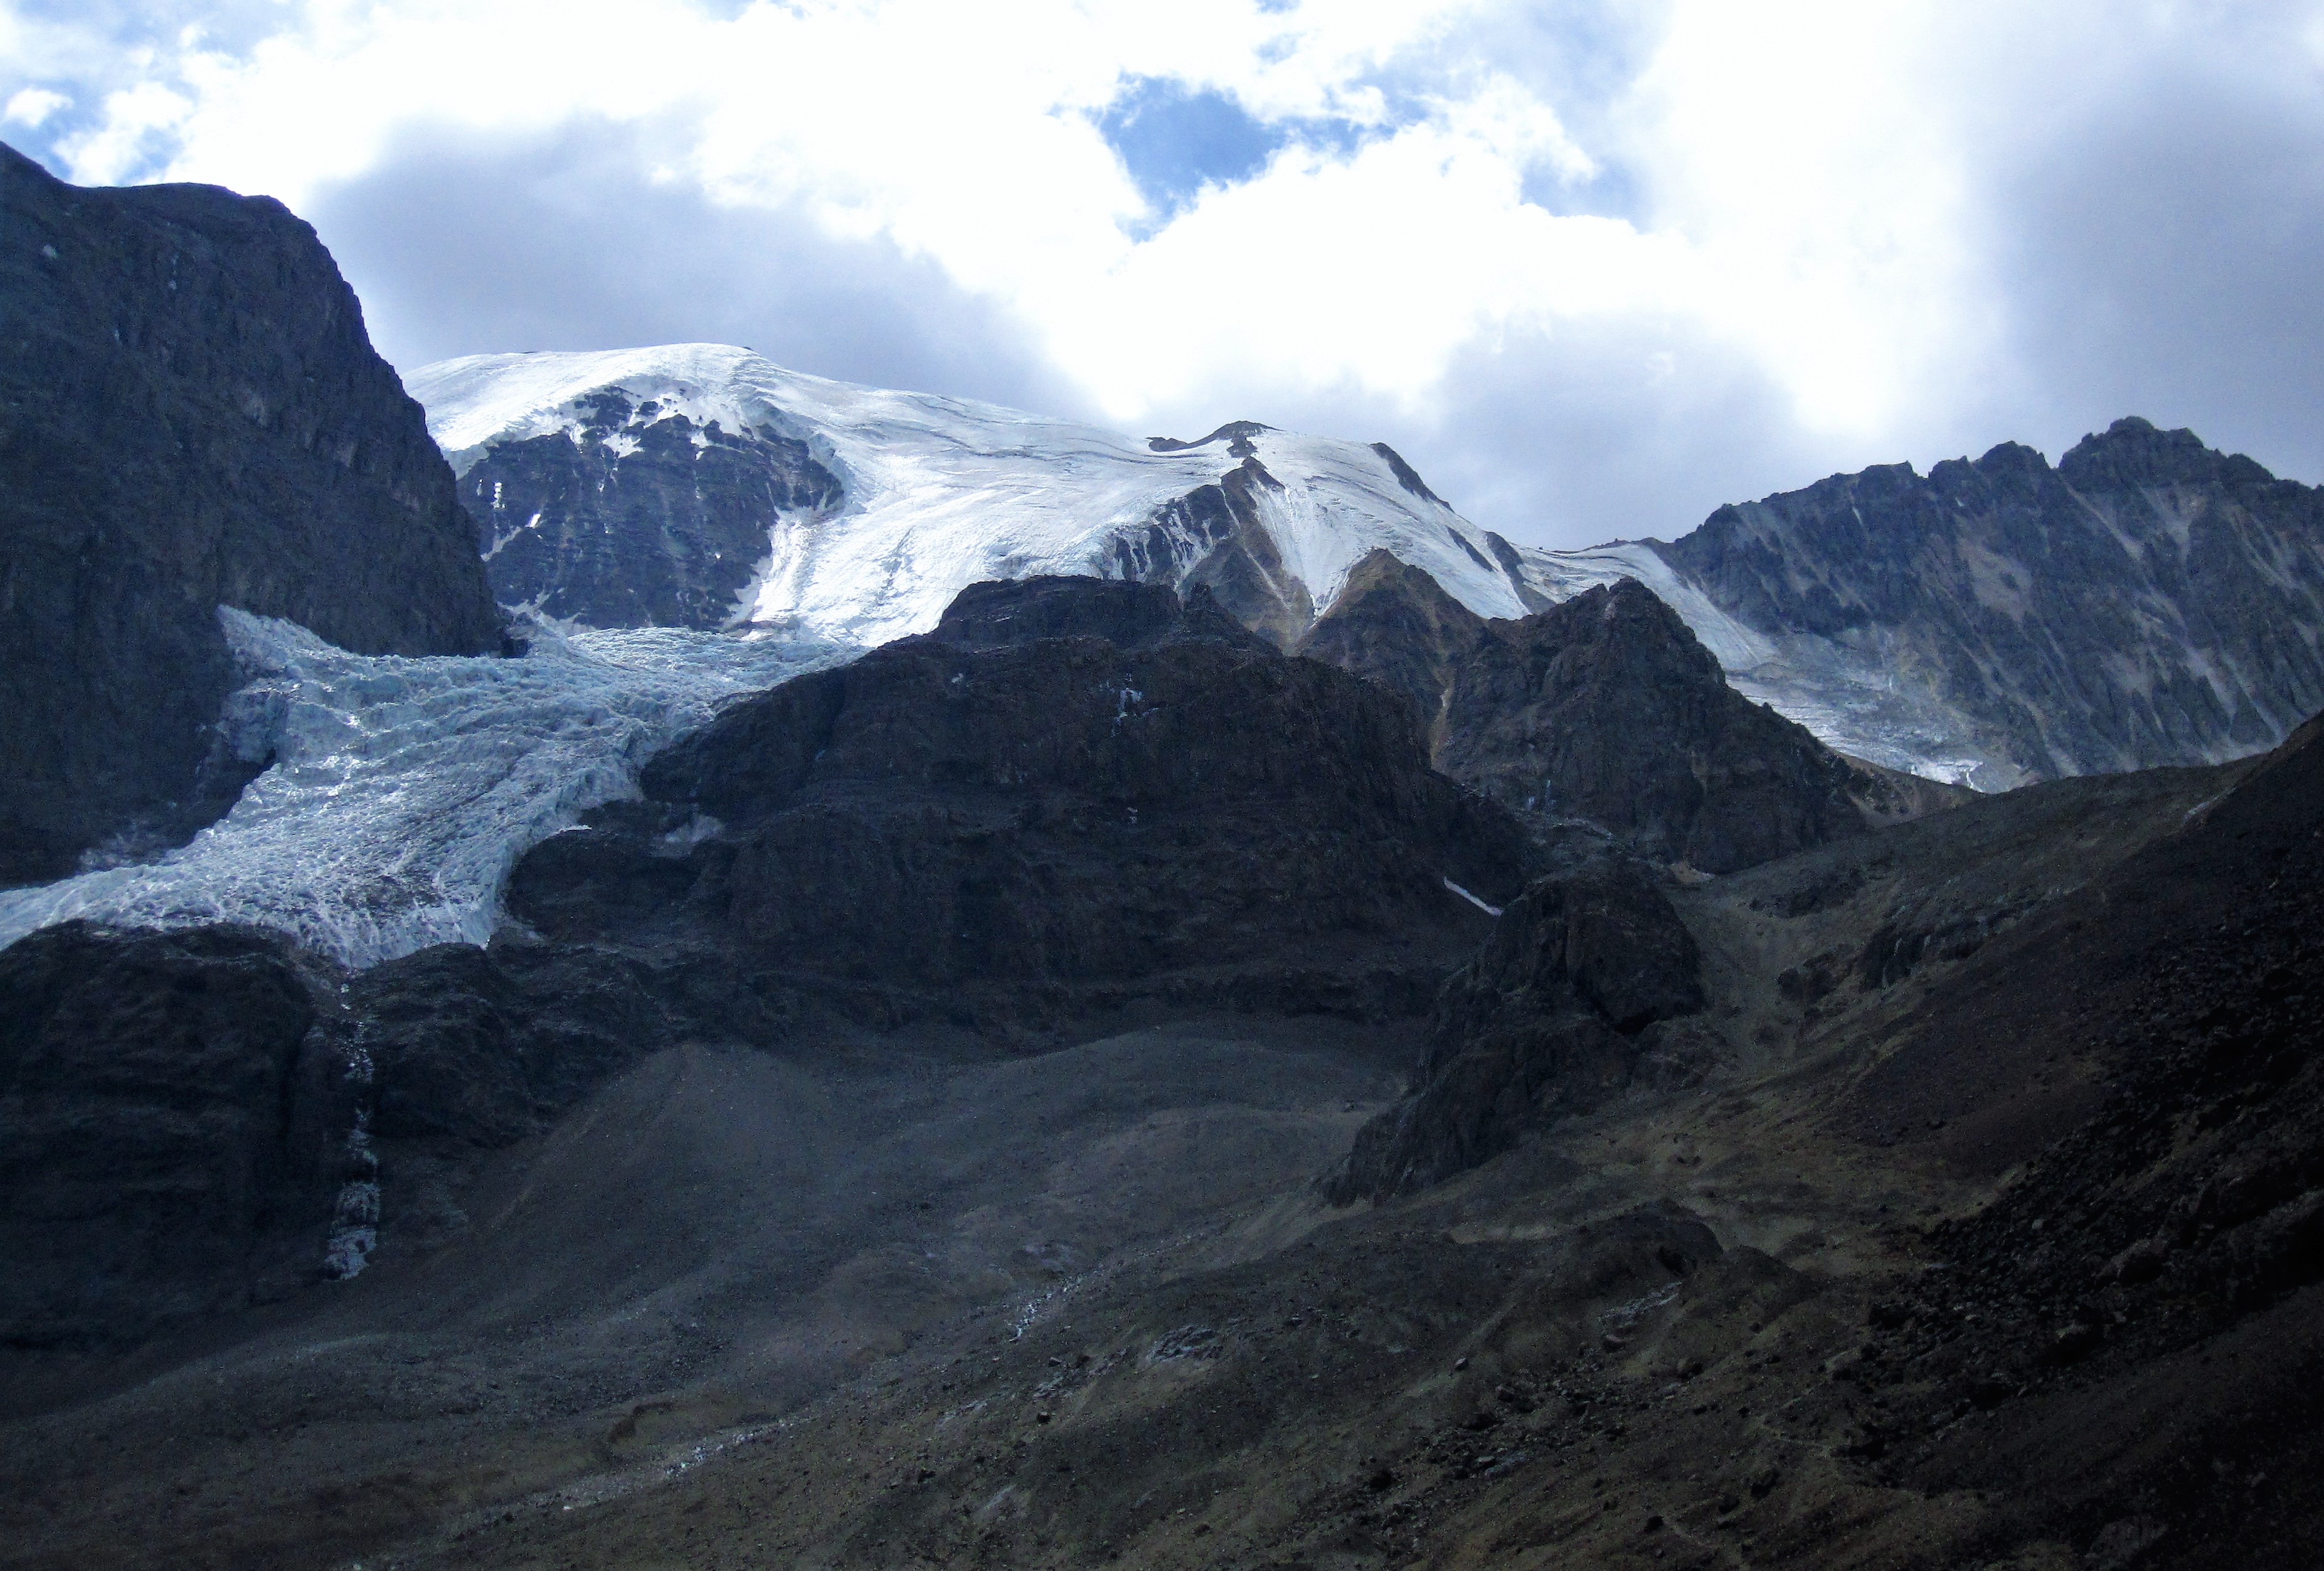 La Paloma glacier